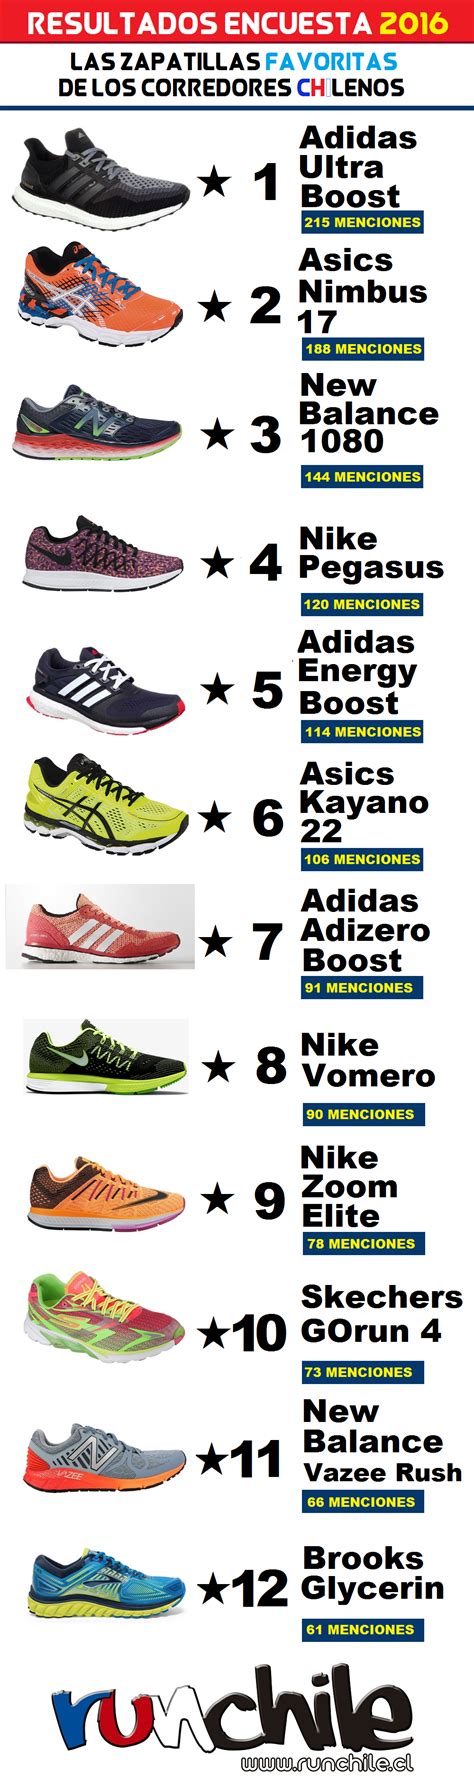 Zapatillas Running Adidas Boost Chile raquelrecolons.es